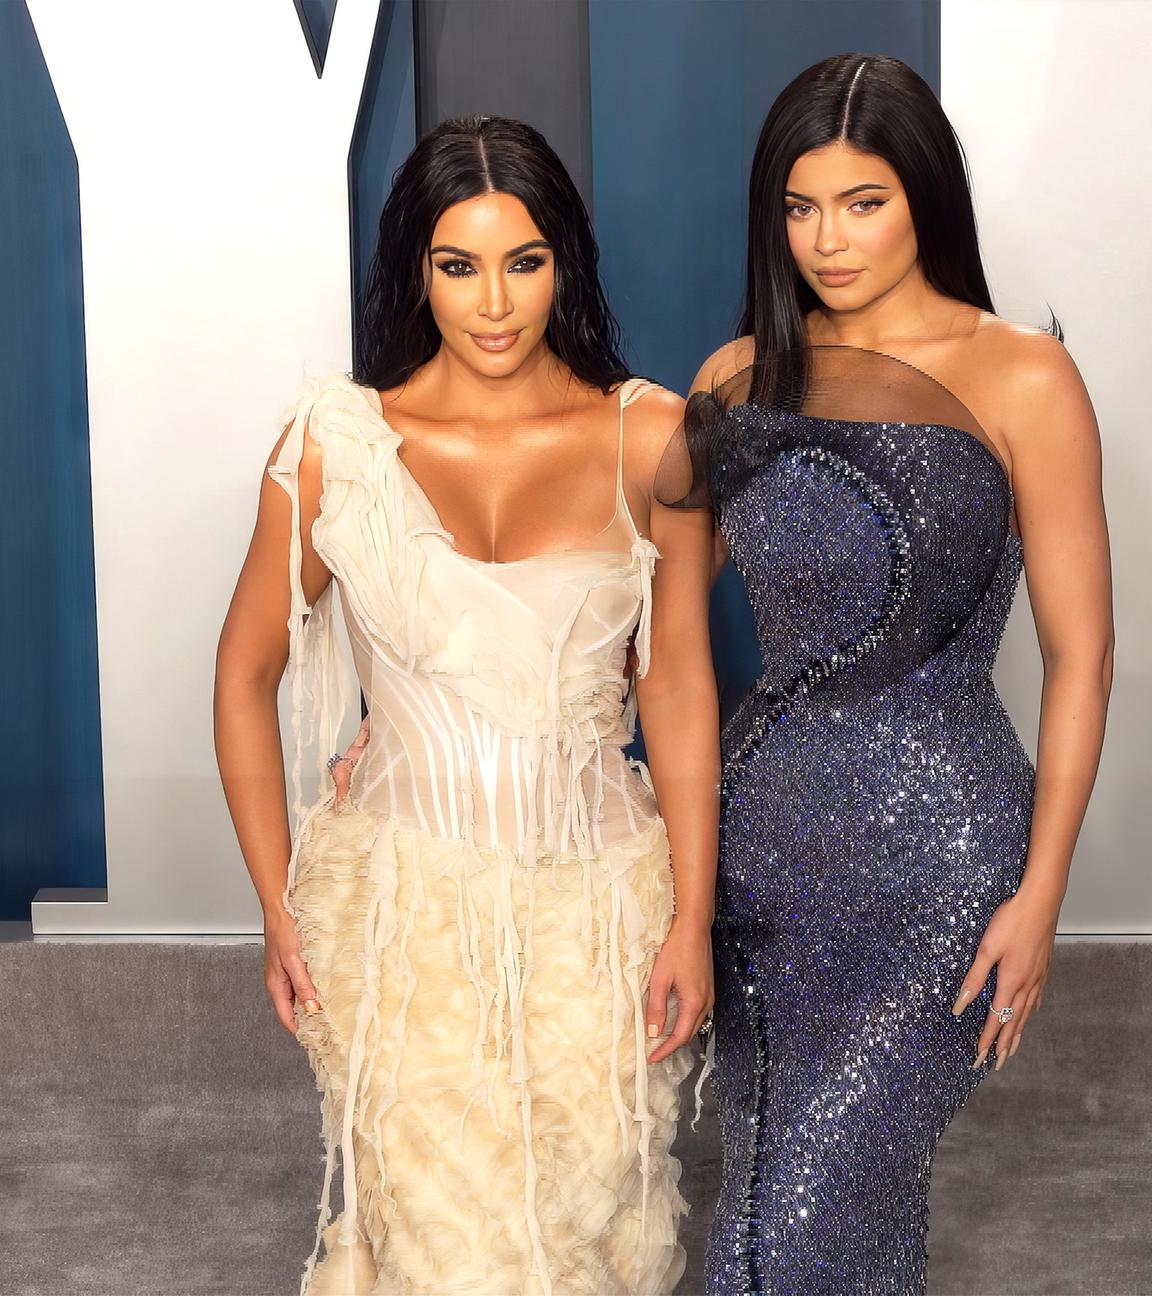 Kylie und Kim Kardashian stehen in Abendgarderobe auf einem grauen Teppich bei einer Veranstaltung.